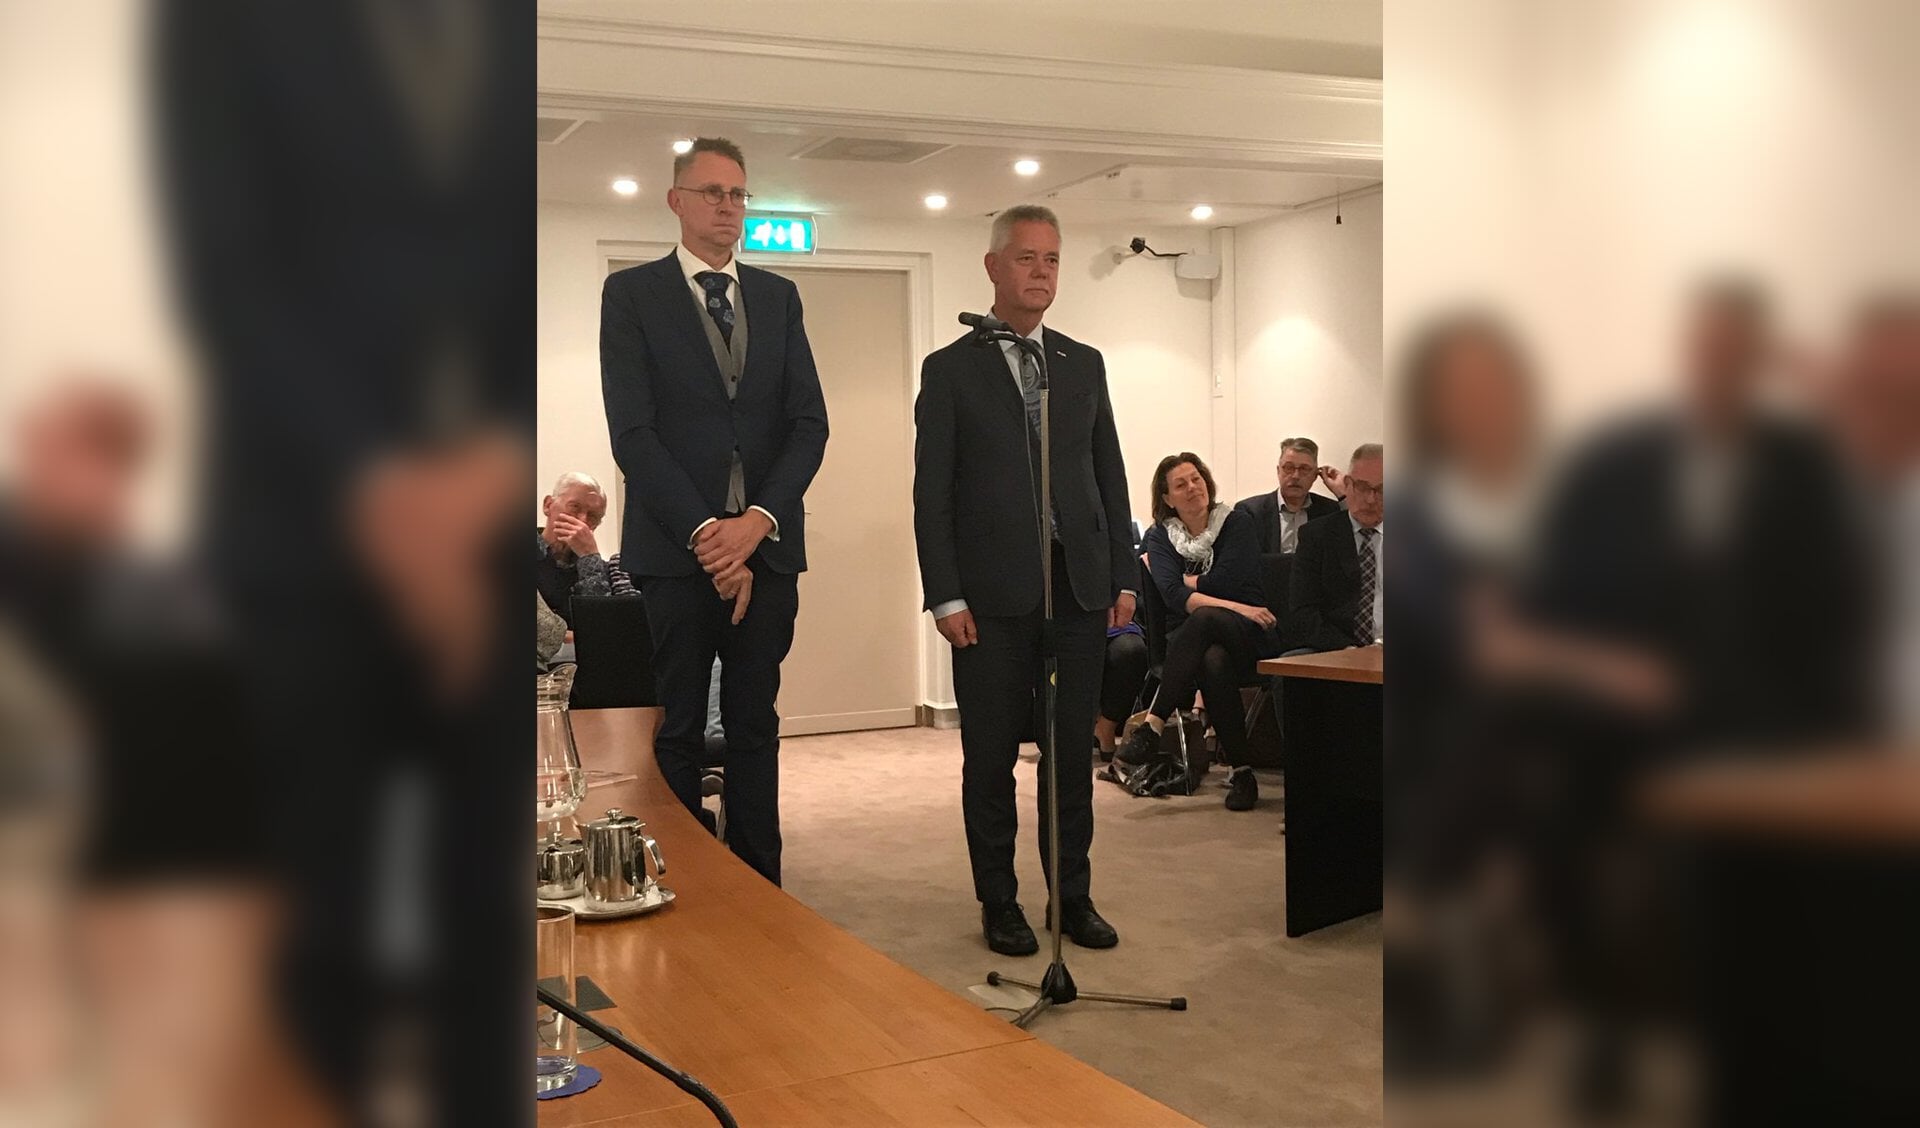 • De wethouders Gerrit Spelt (l) en Johan van Everdingen tijdens hun benoeming.